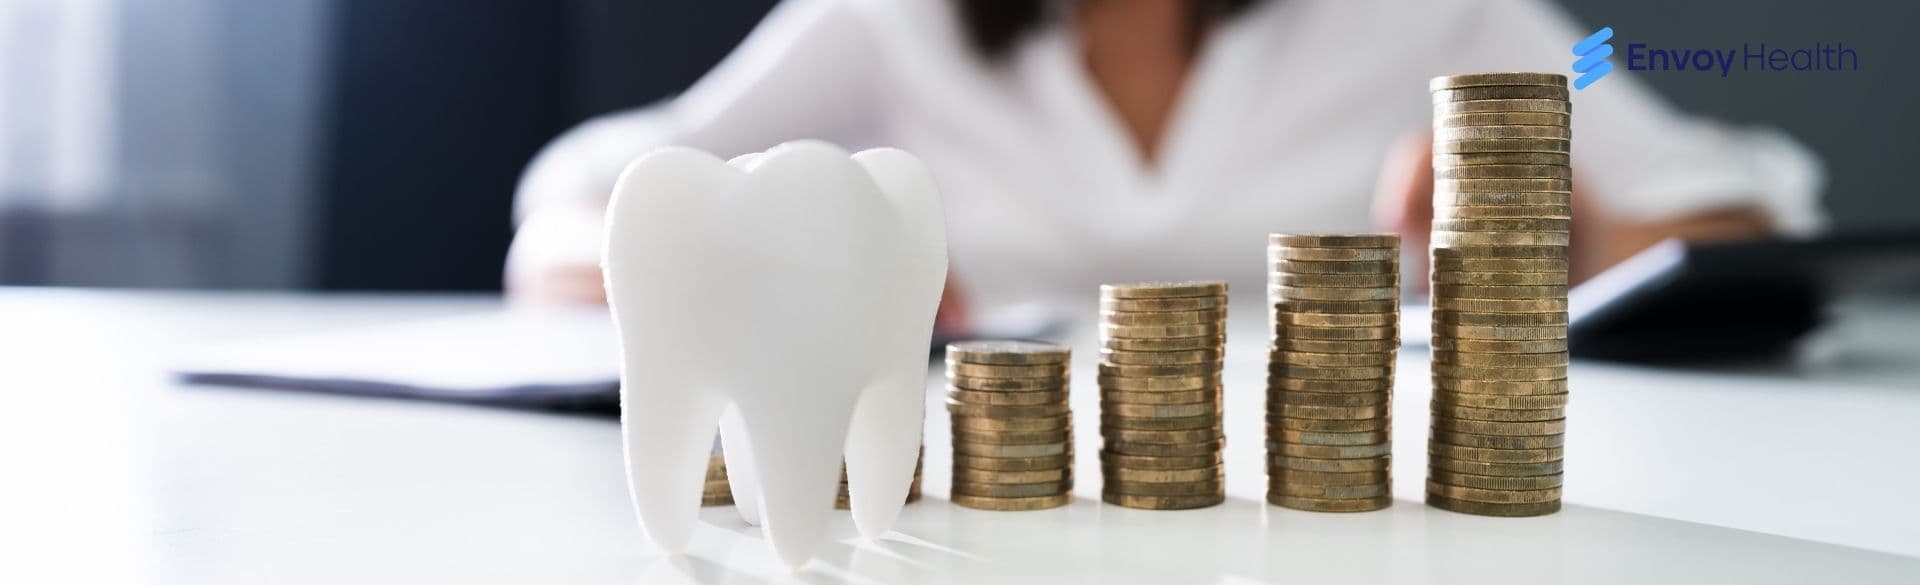 Los Algodones Dental Prices Estimates with Dental Expert